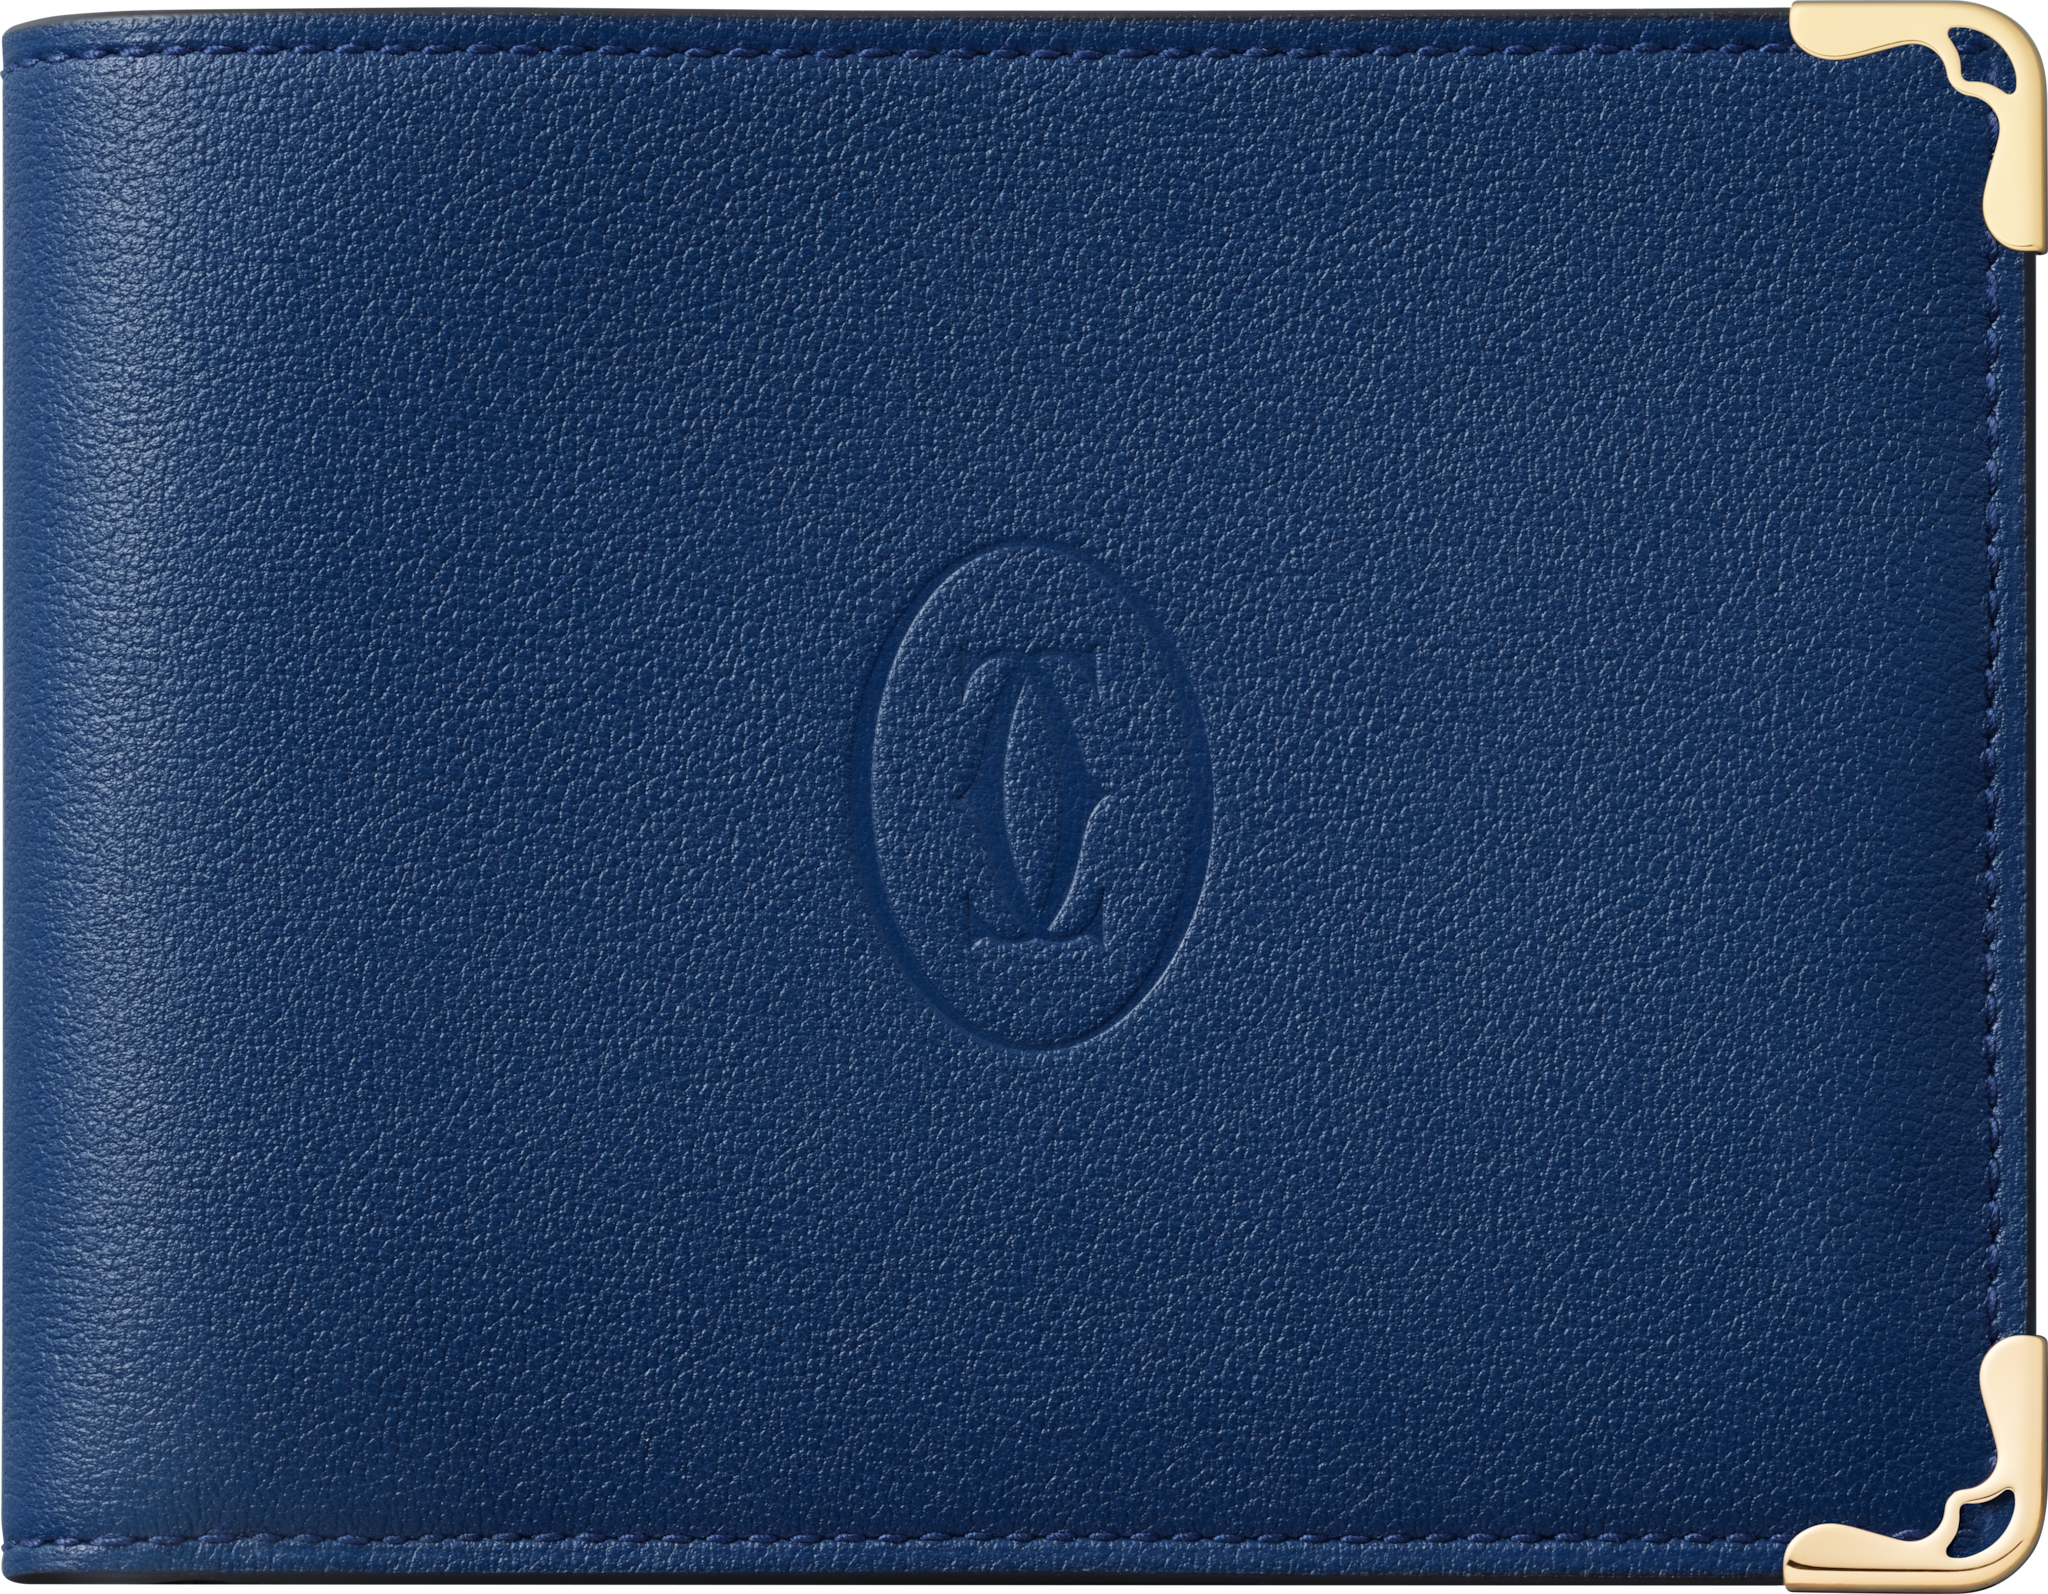 Six-credit card compact wallet, Must de CartierDeep blue calfskin, palladium finish